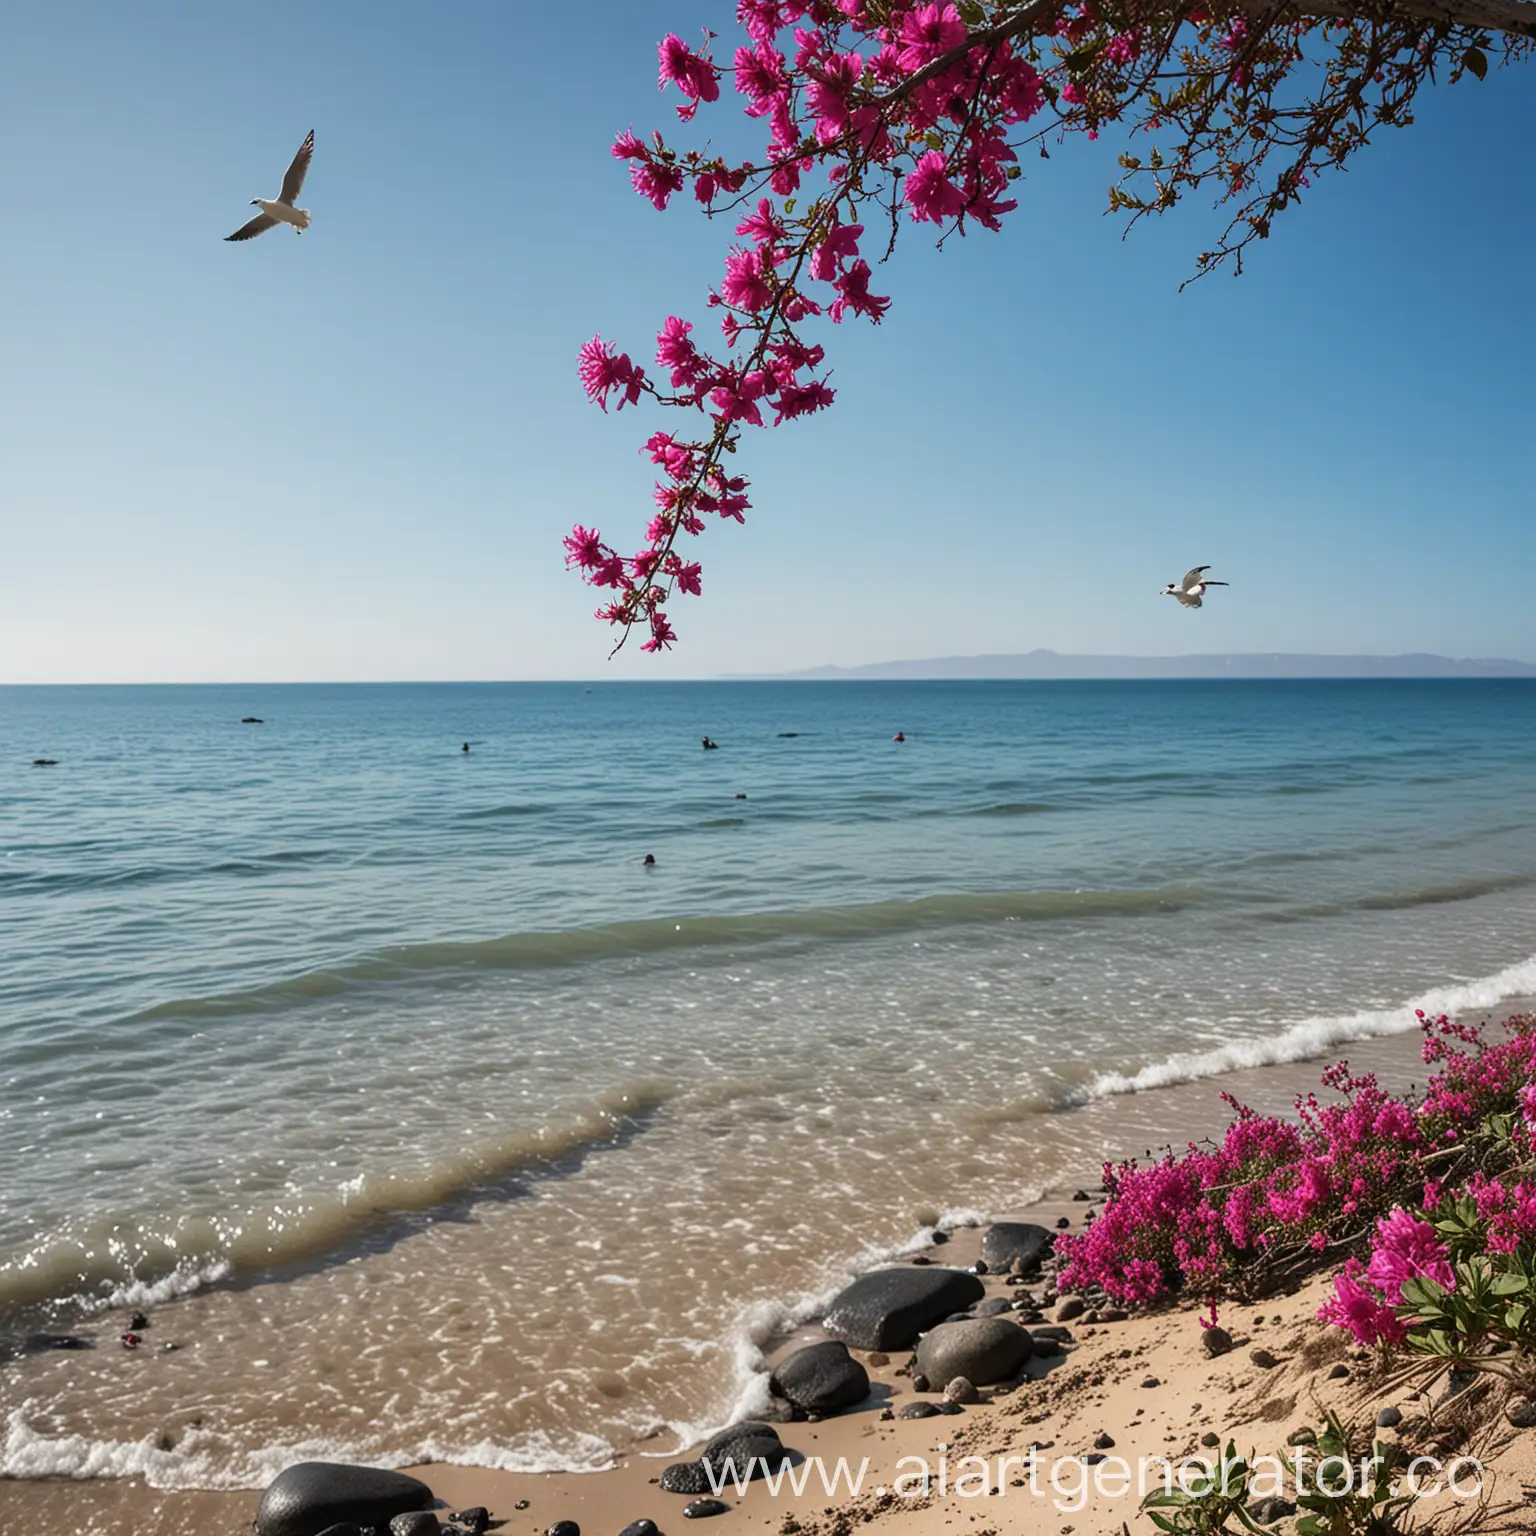 панорама пляжа  из черной гальки синяя вода, над водой летает чайка   голубое небо и сбоку ветка с цветами цвета фуксии
